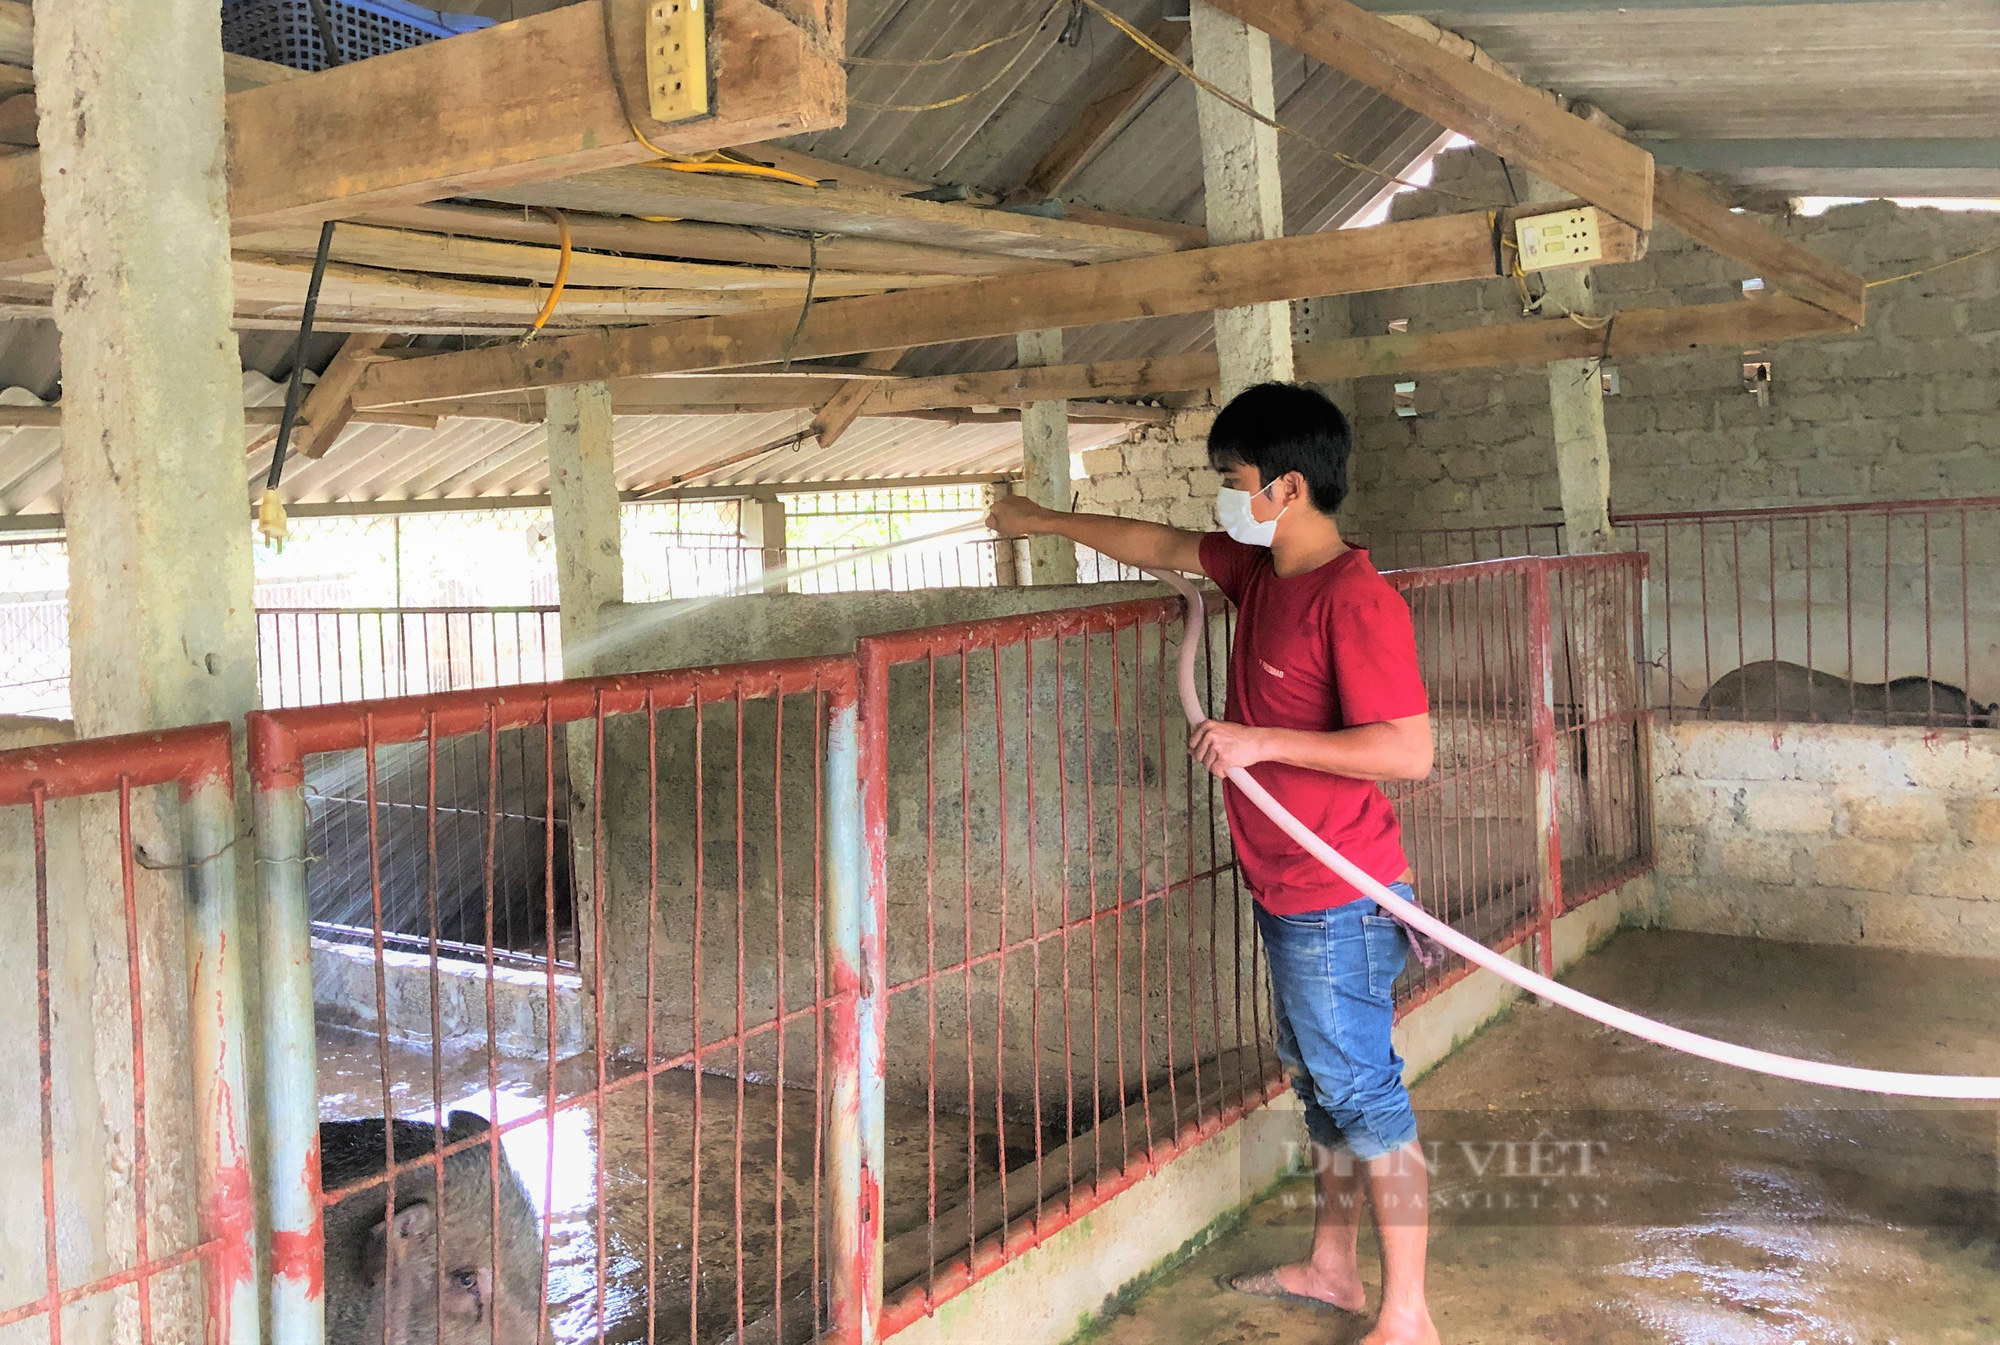 Nông dân Hà Tĩnh nuôi lợn rừng bằng thảo dược, miễn nhiễm dịch bệnh, bỏ túi hàng trăm triệu đồng mỗi năm - Ảnh 4.